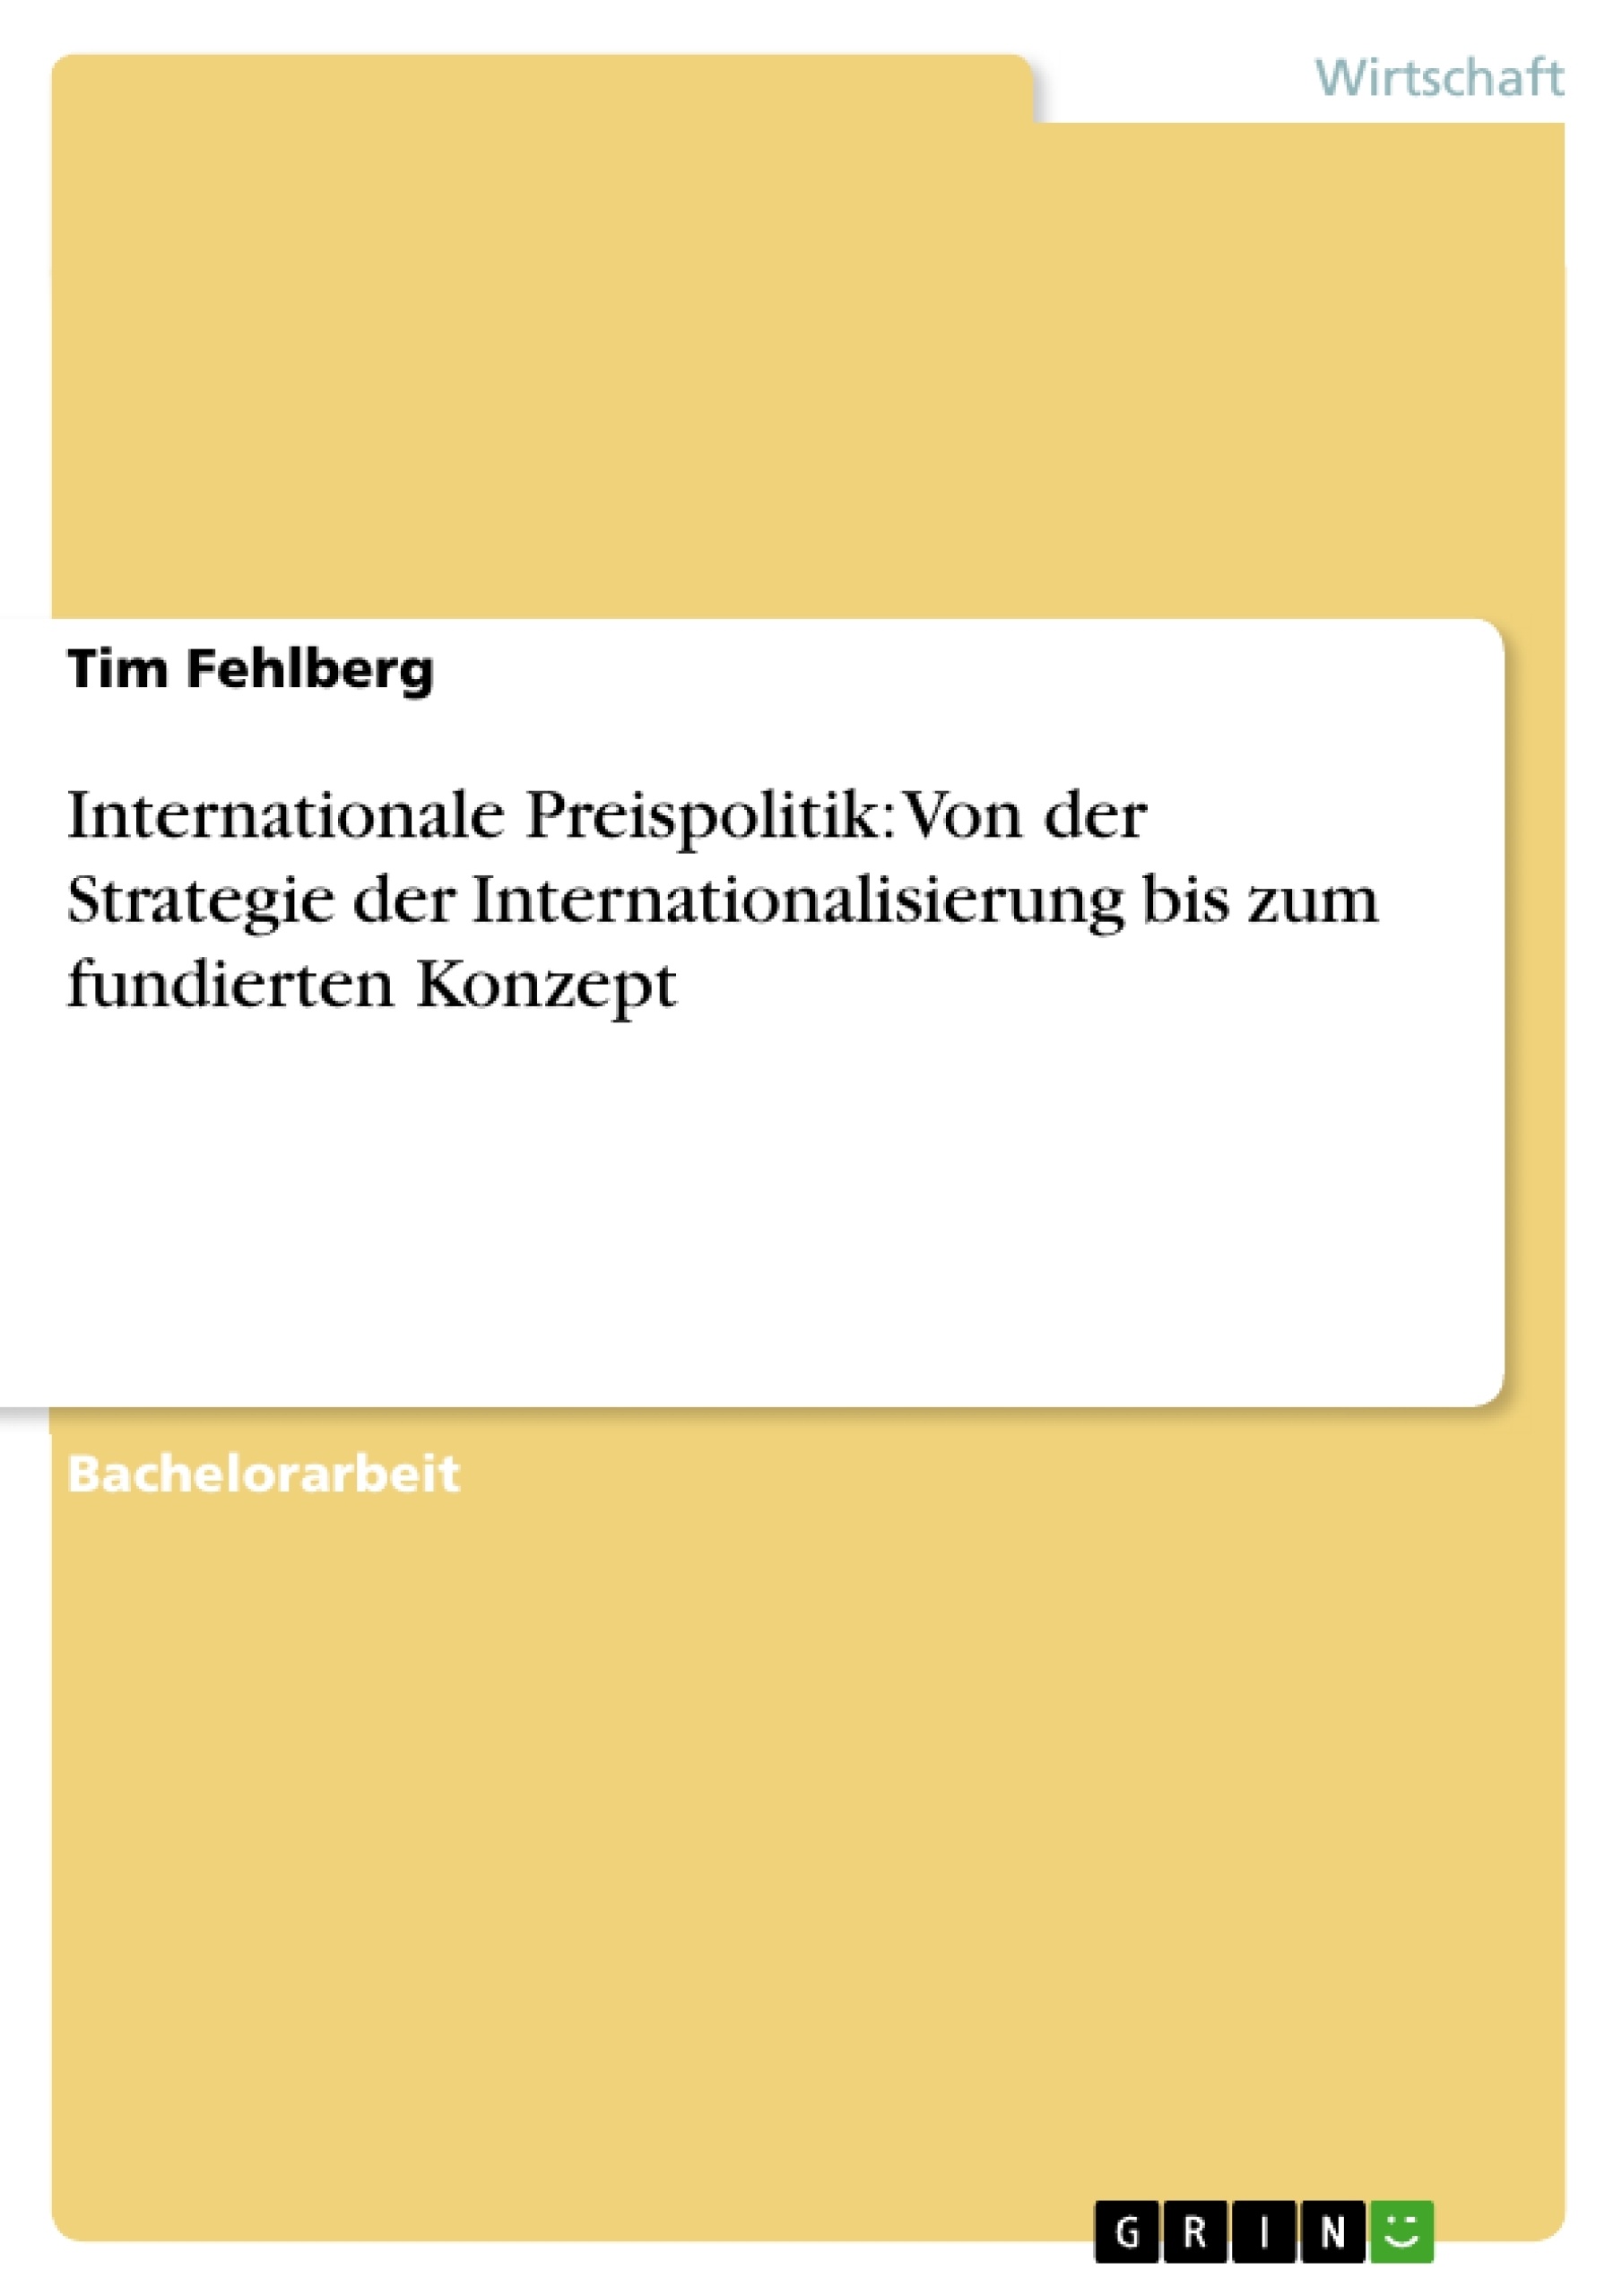 Title: Internationale Preispolitik: Von der Strategie der Internationalisierung bis zum fundierten Konzept